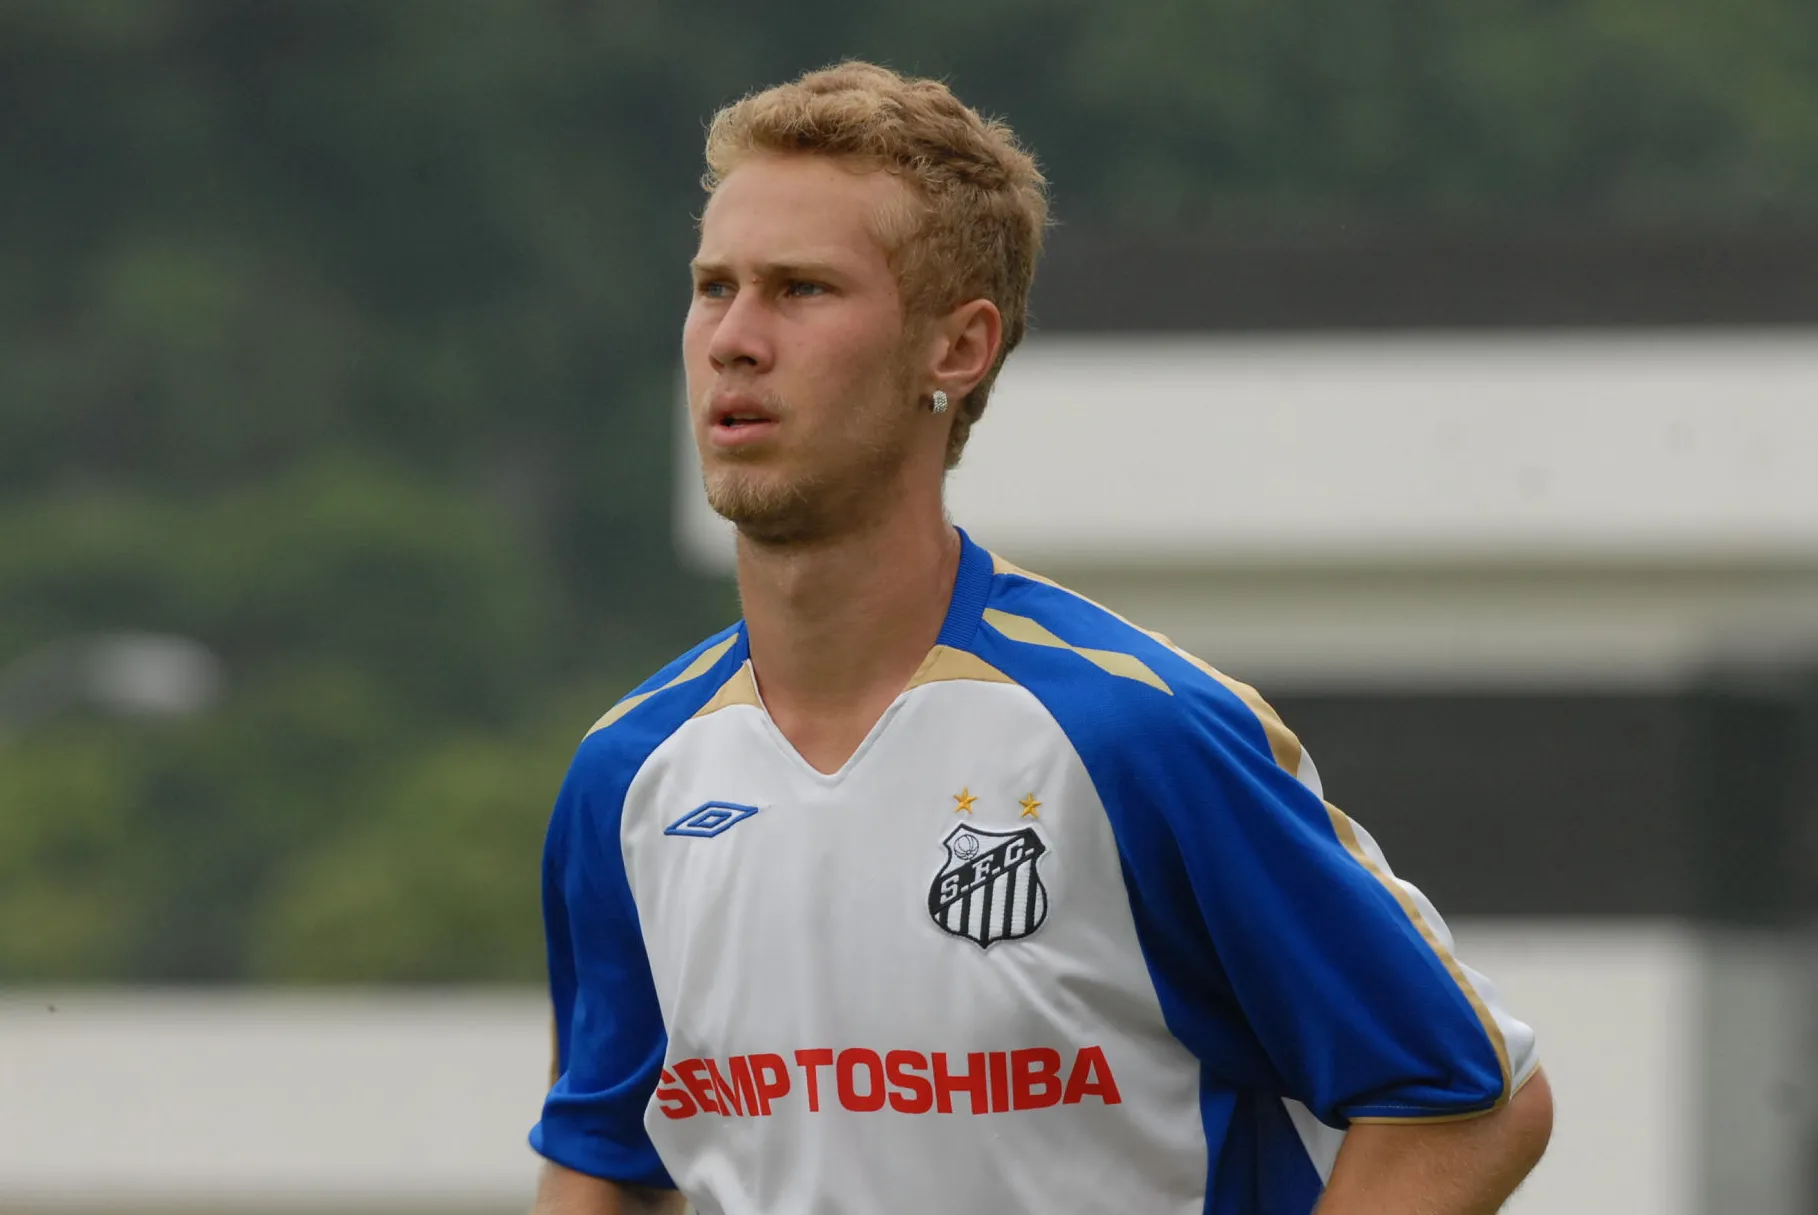 Alemão iniciou a carreira no Santos, mas optou por não renovar o contrato em 2008